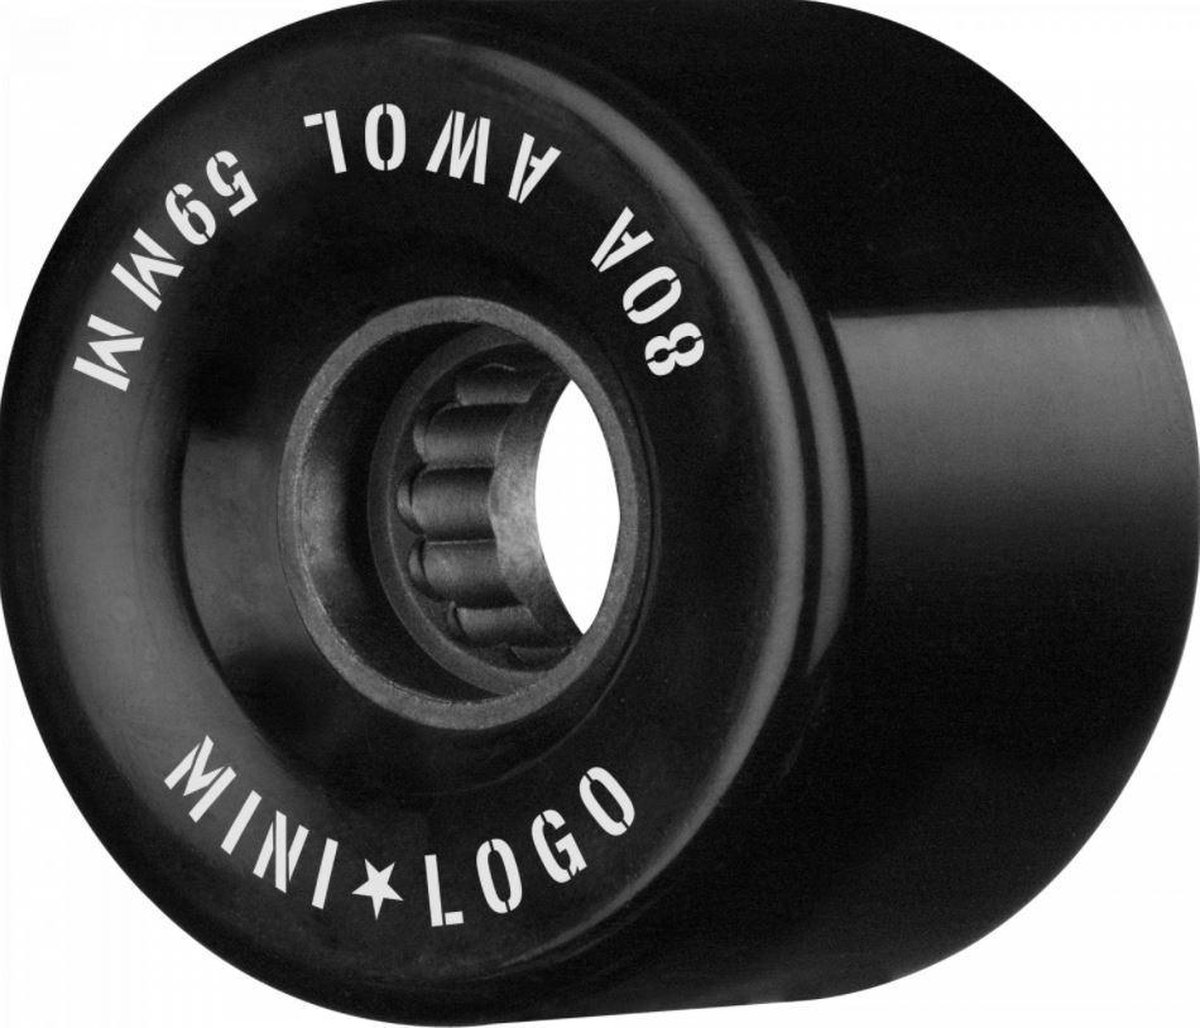 Minilogo Mini Logo A.w.o.l 80a 59 Mm Skateboard Wielen - Black